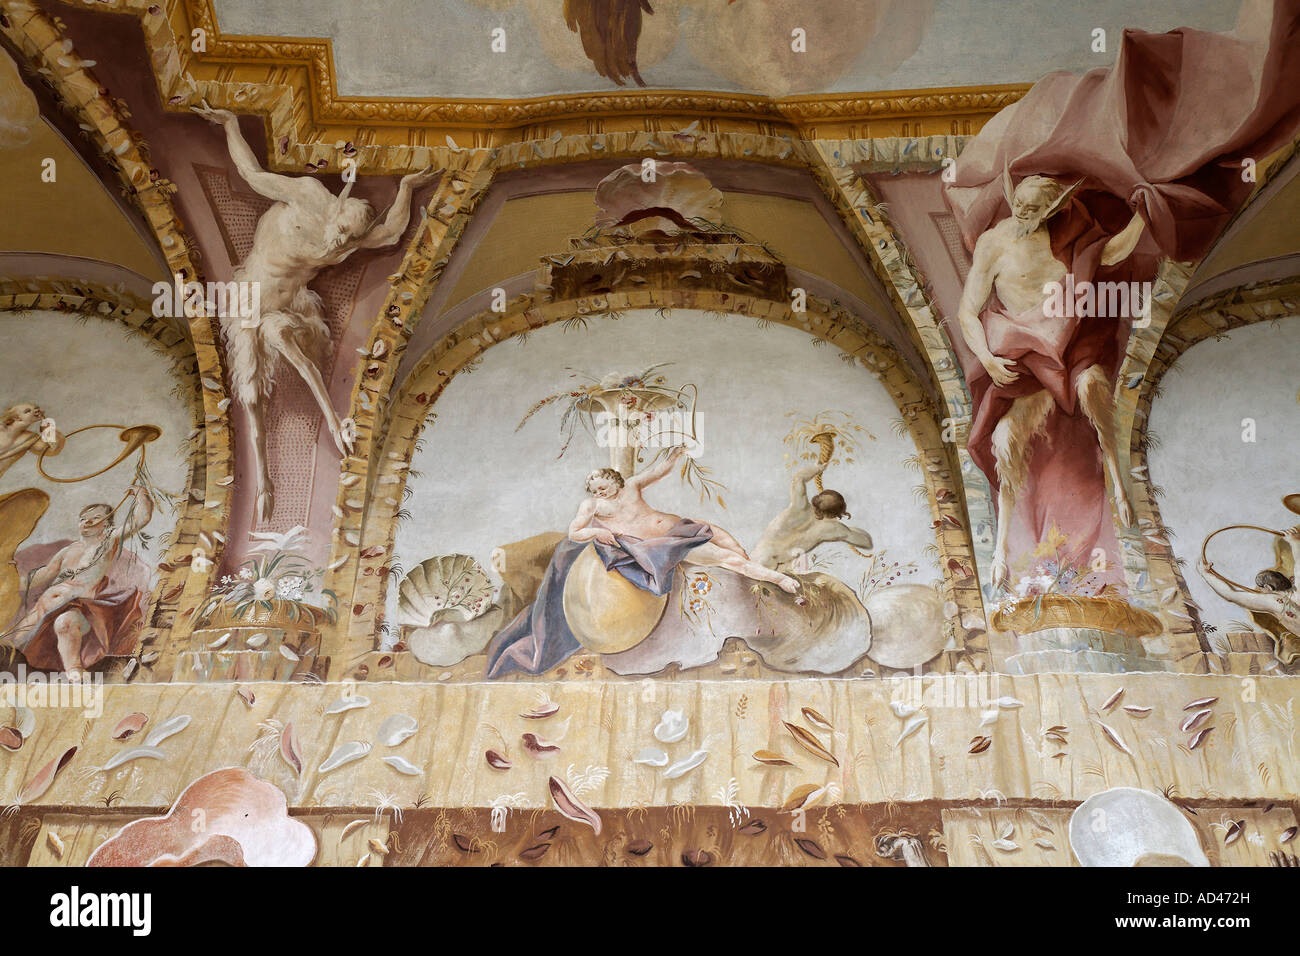 Grotesque ceiling fresco, triton room, Benedictine convent Altenburg near Horn, Lower Austria Stock Photo